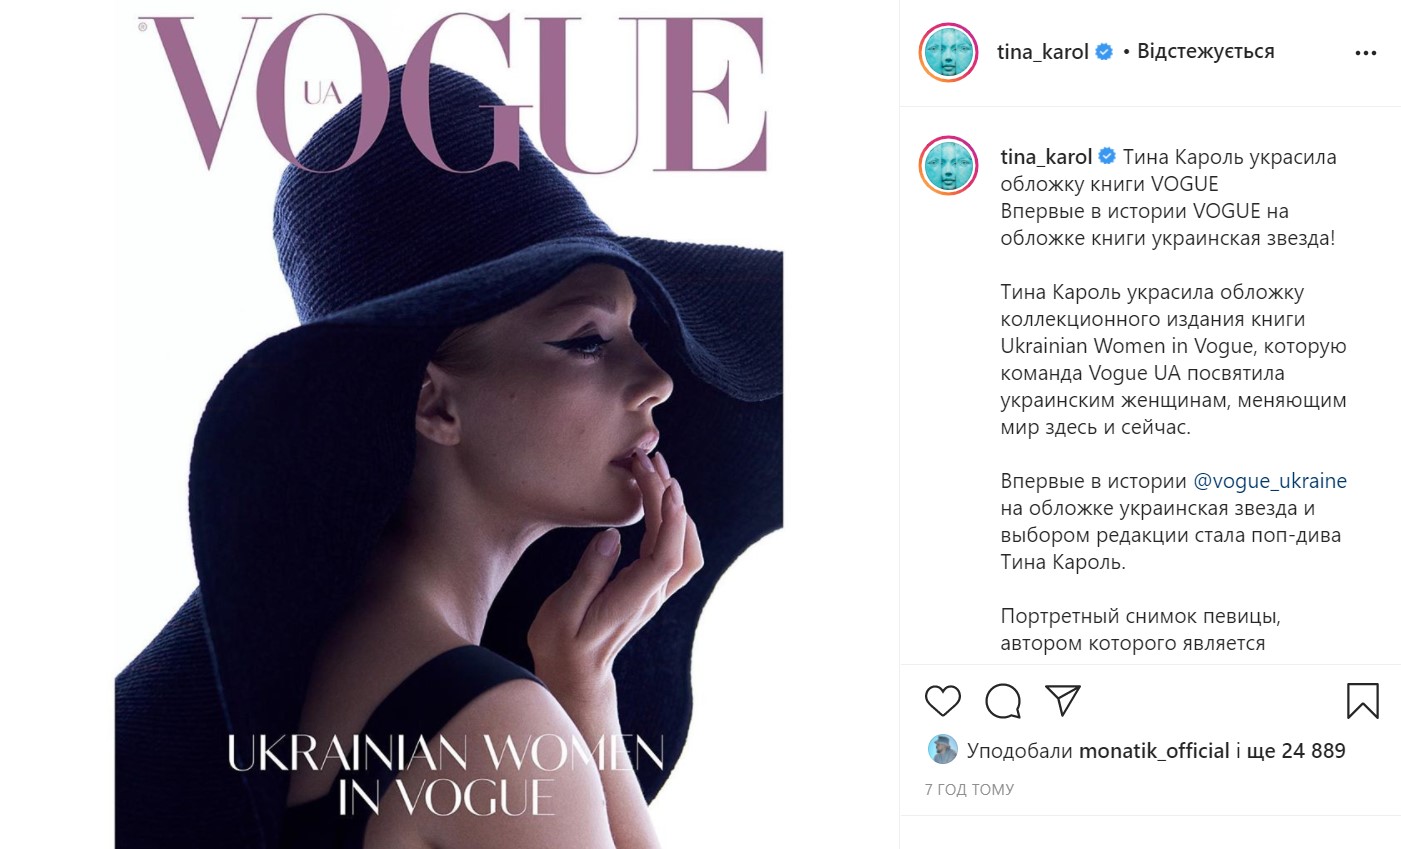 Тіна Кароль стала першою українською зіркою на обкладинці книги Vogue - фото 2